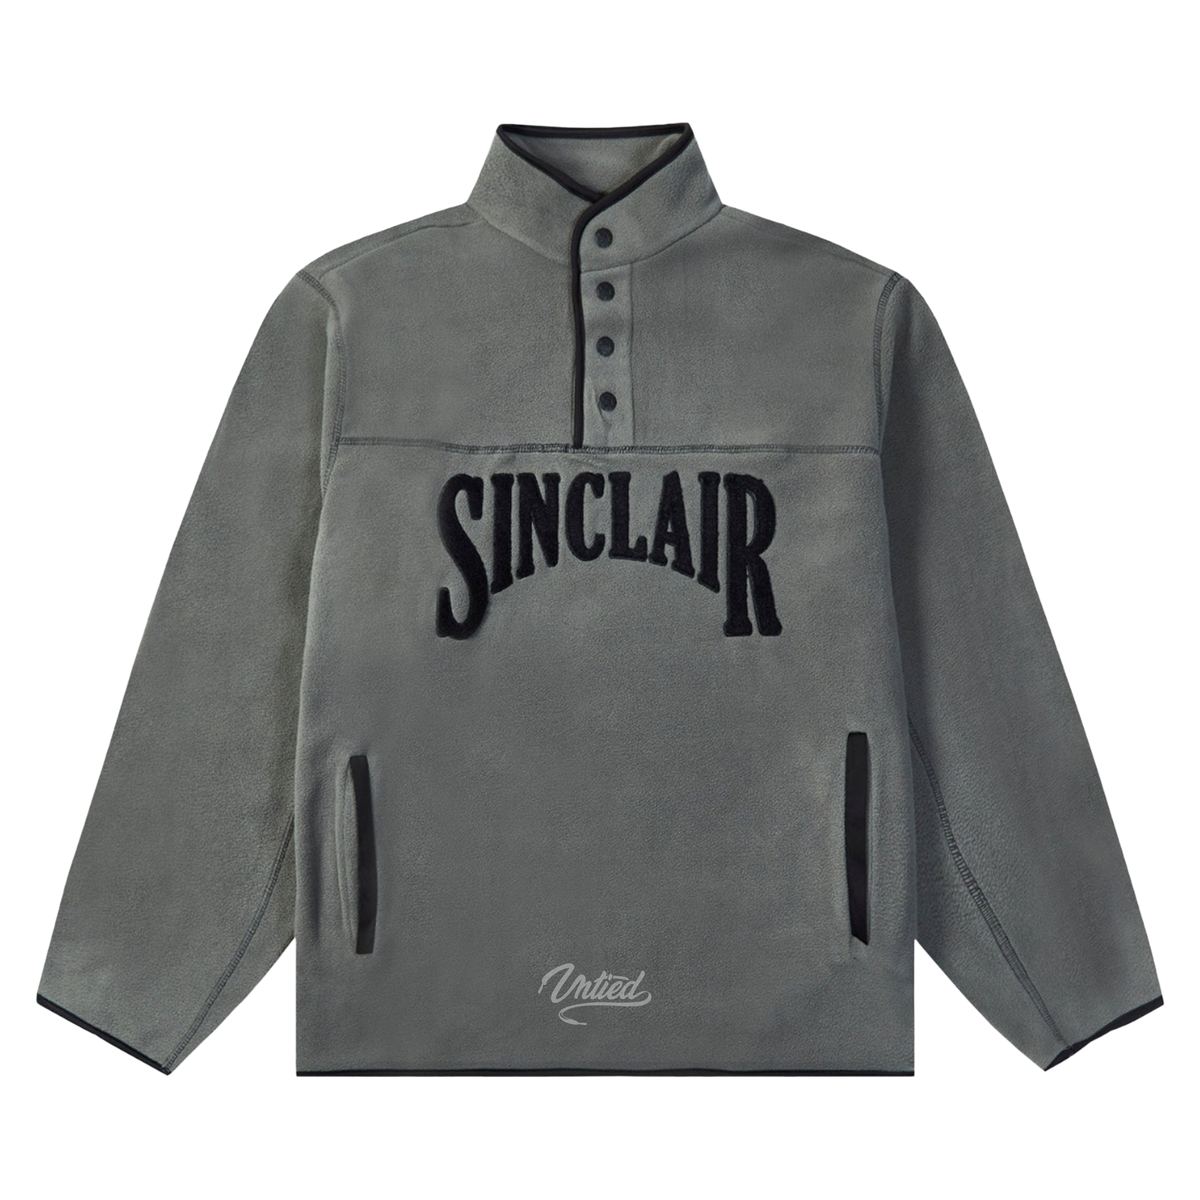 Sinclair Polar Fleece 1/4 Button Up "Grey"